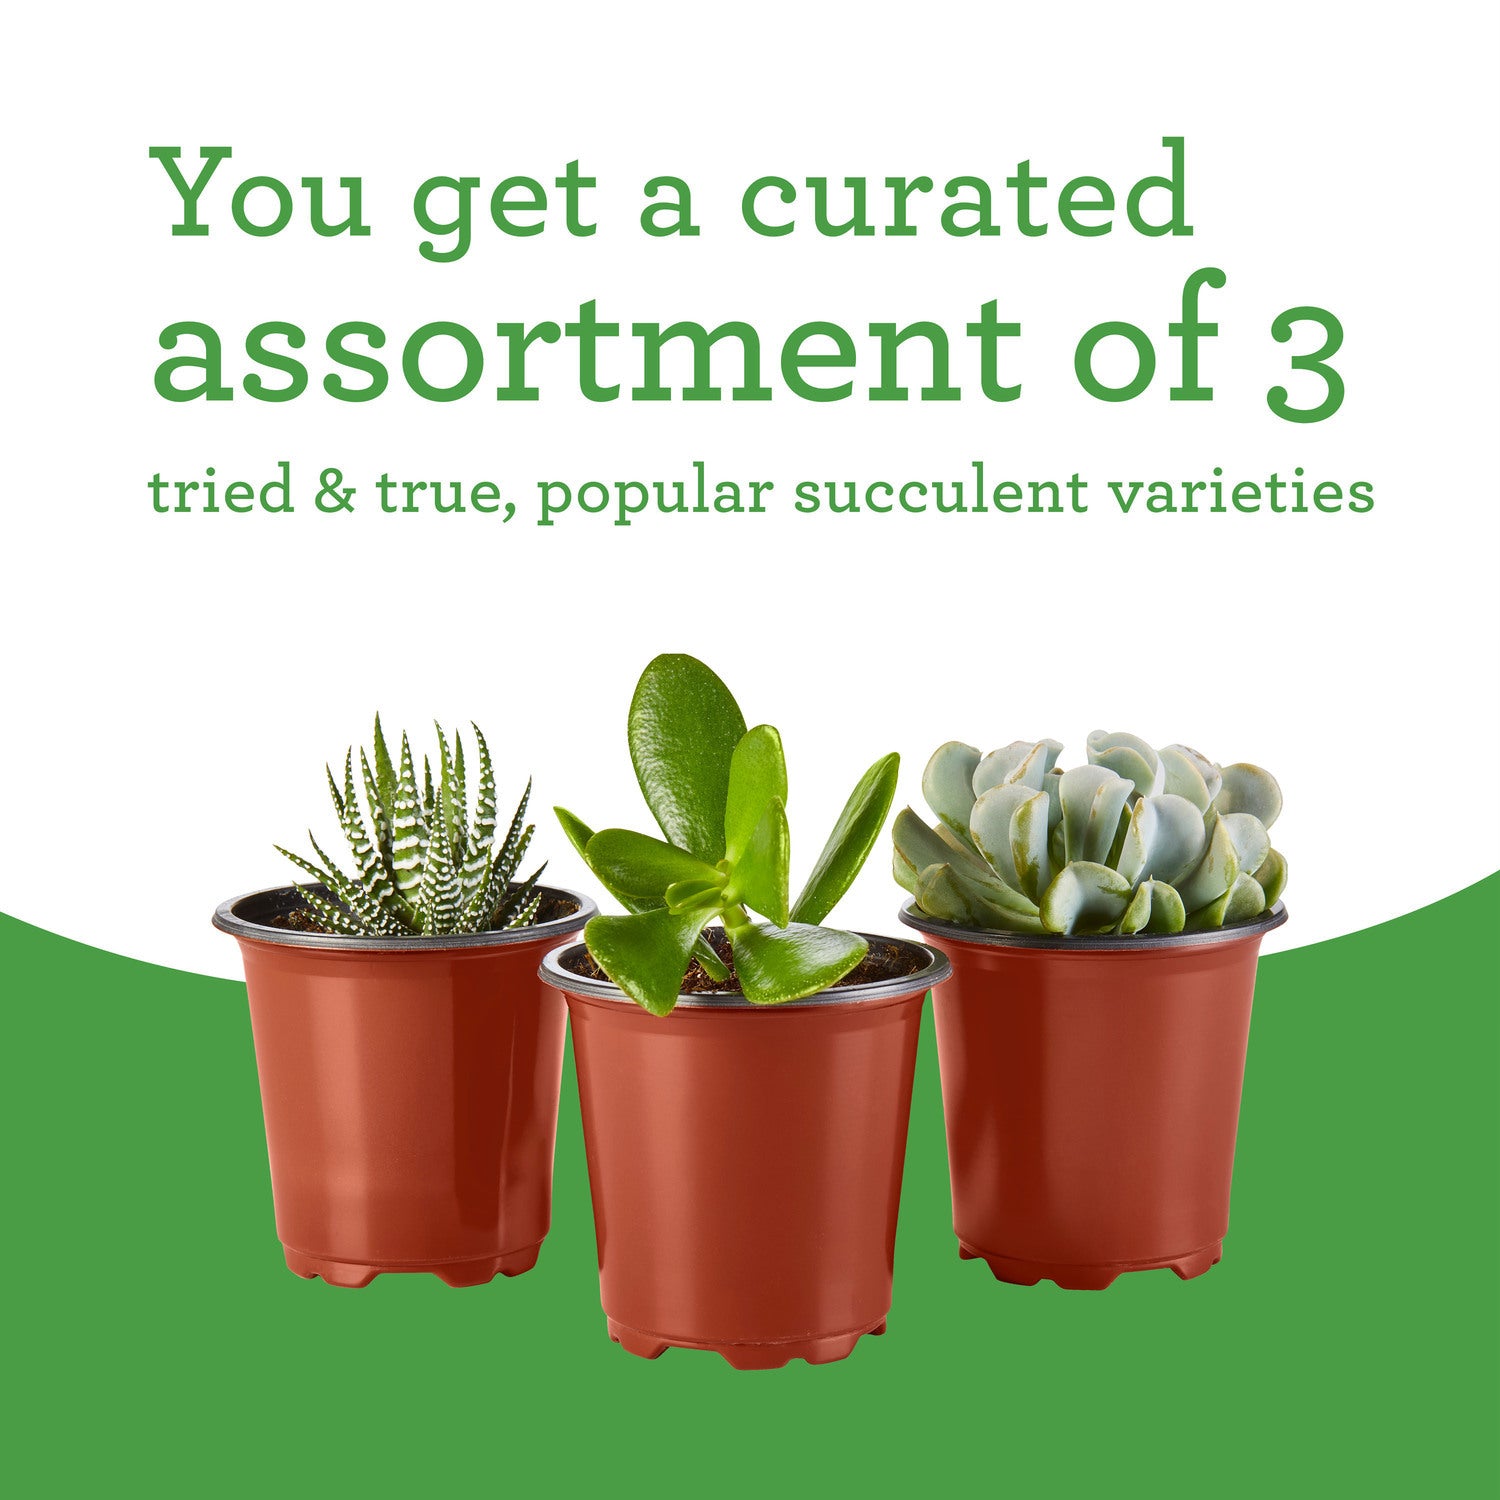 Bonnie Plants Succulent Assortment 2.8 oz., 3-Pack